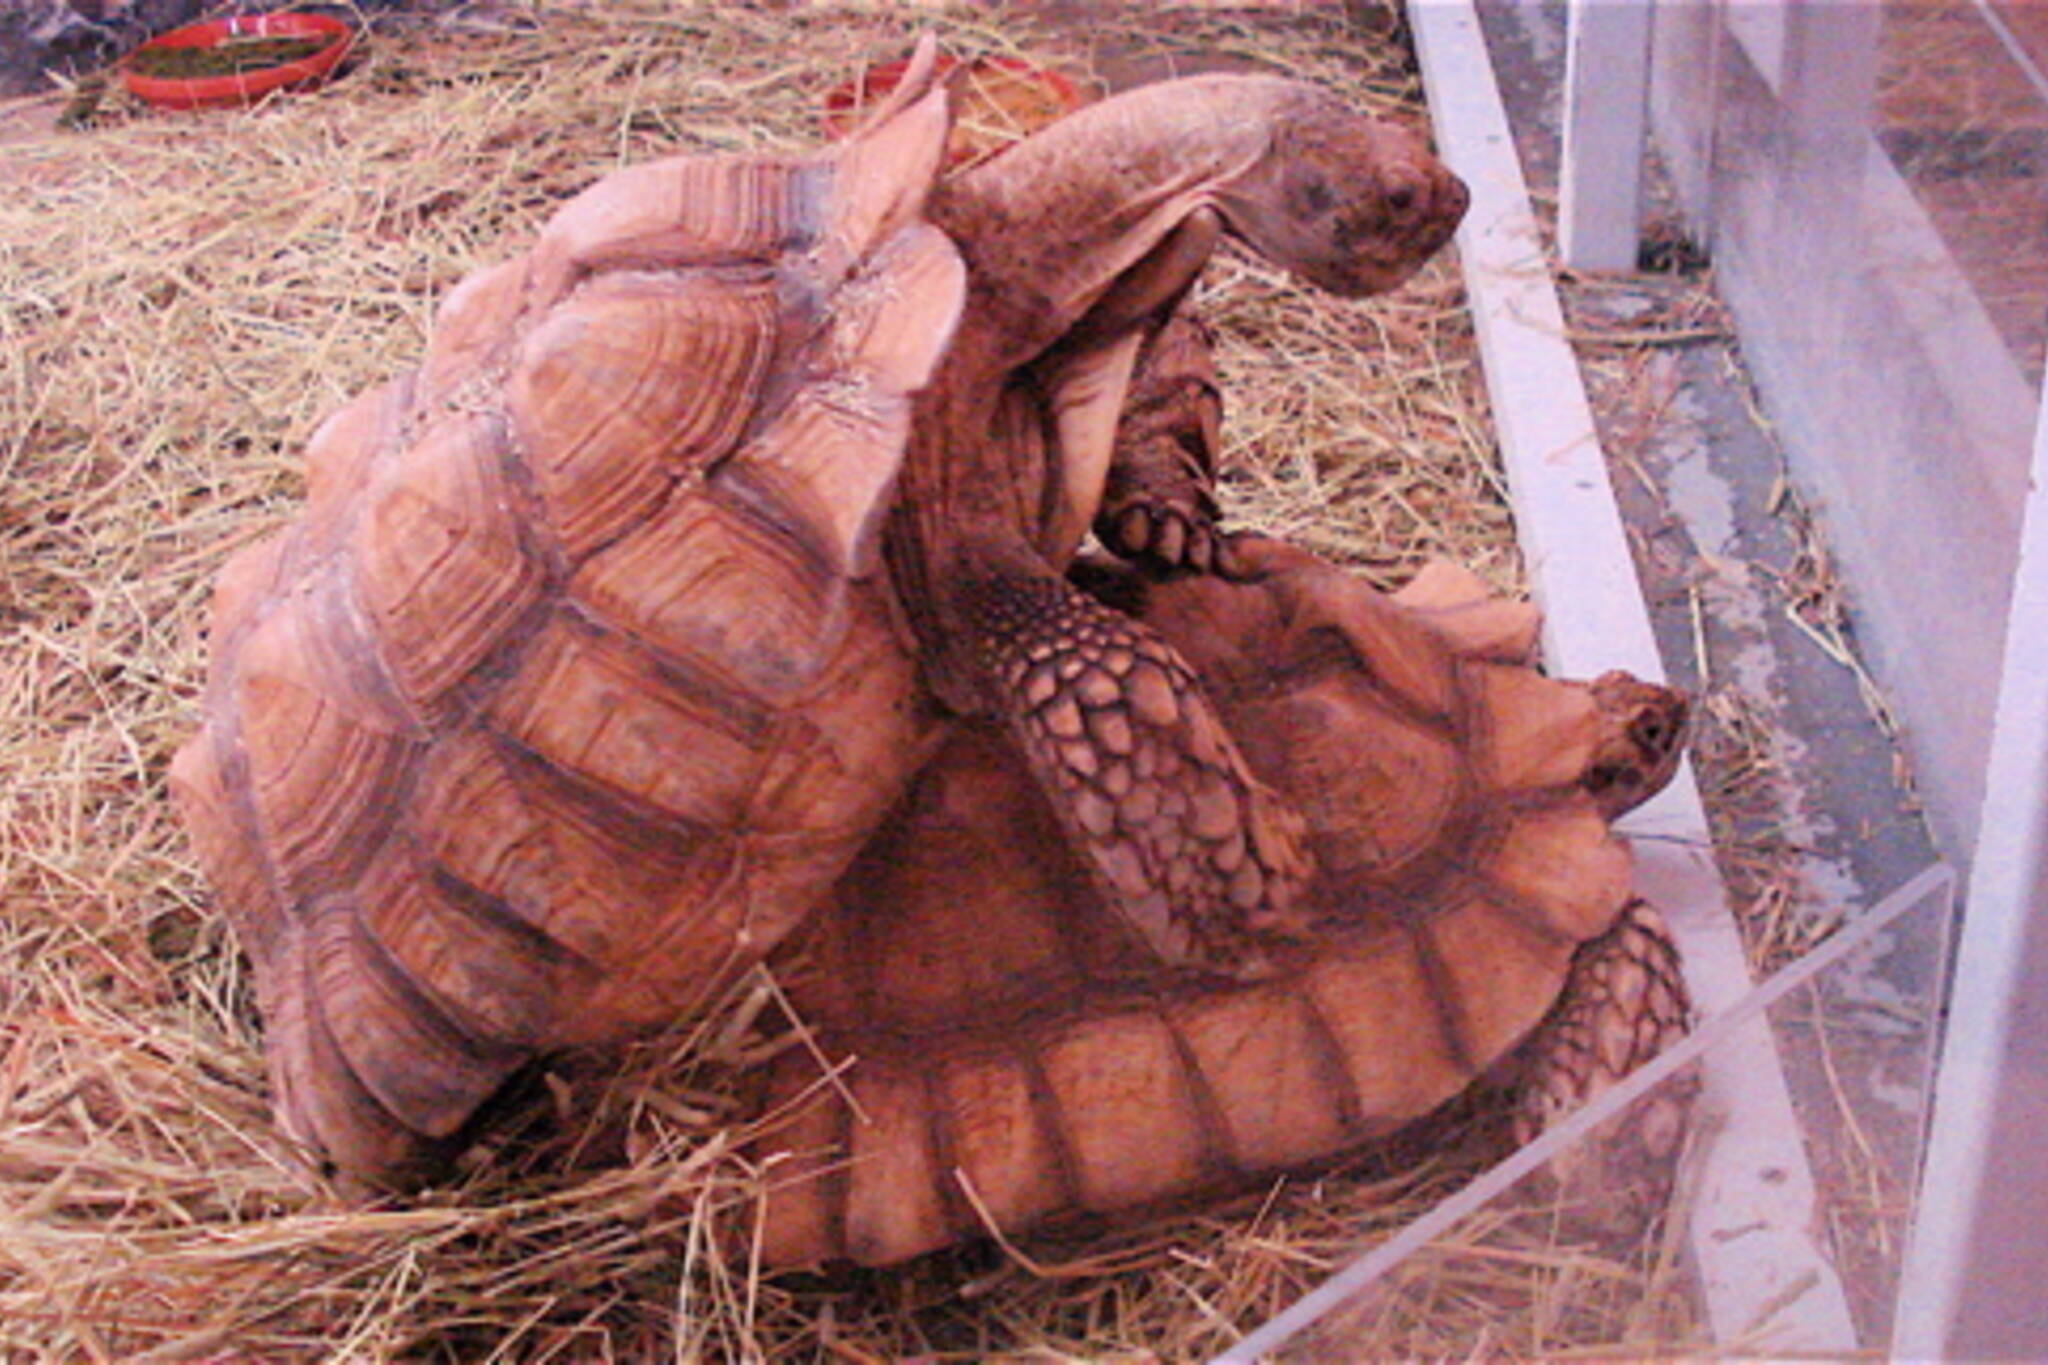  20080324-tortoises.jpg